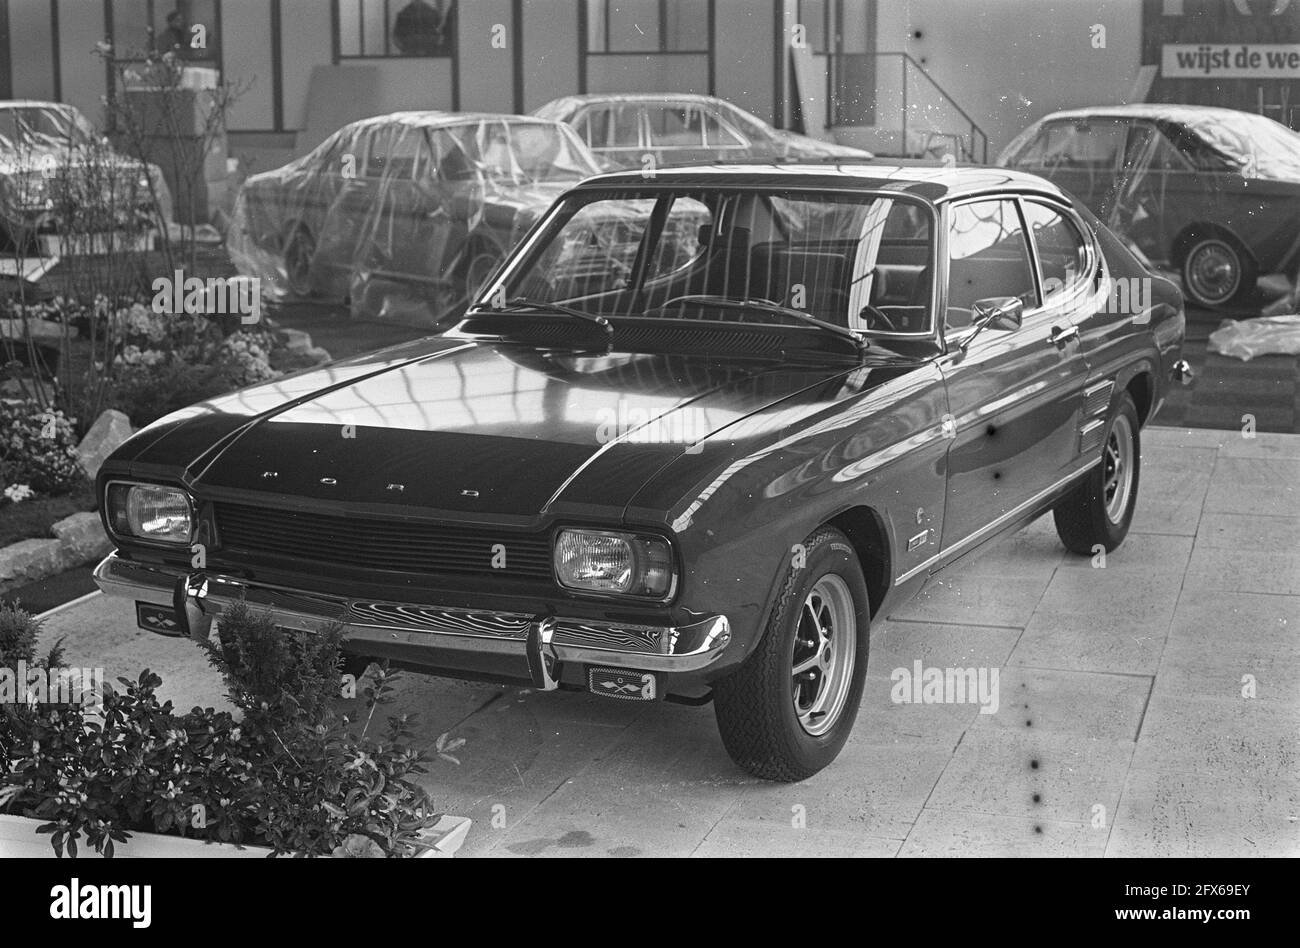 Ford Cars Schwarzweiß-Stockfotos und -bilder - Seite 11 - Alamy